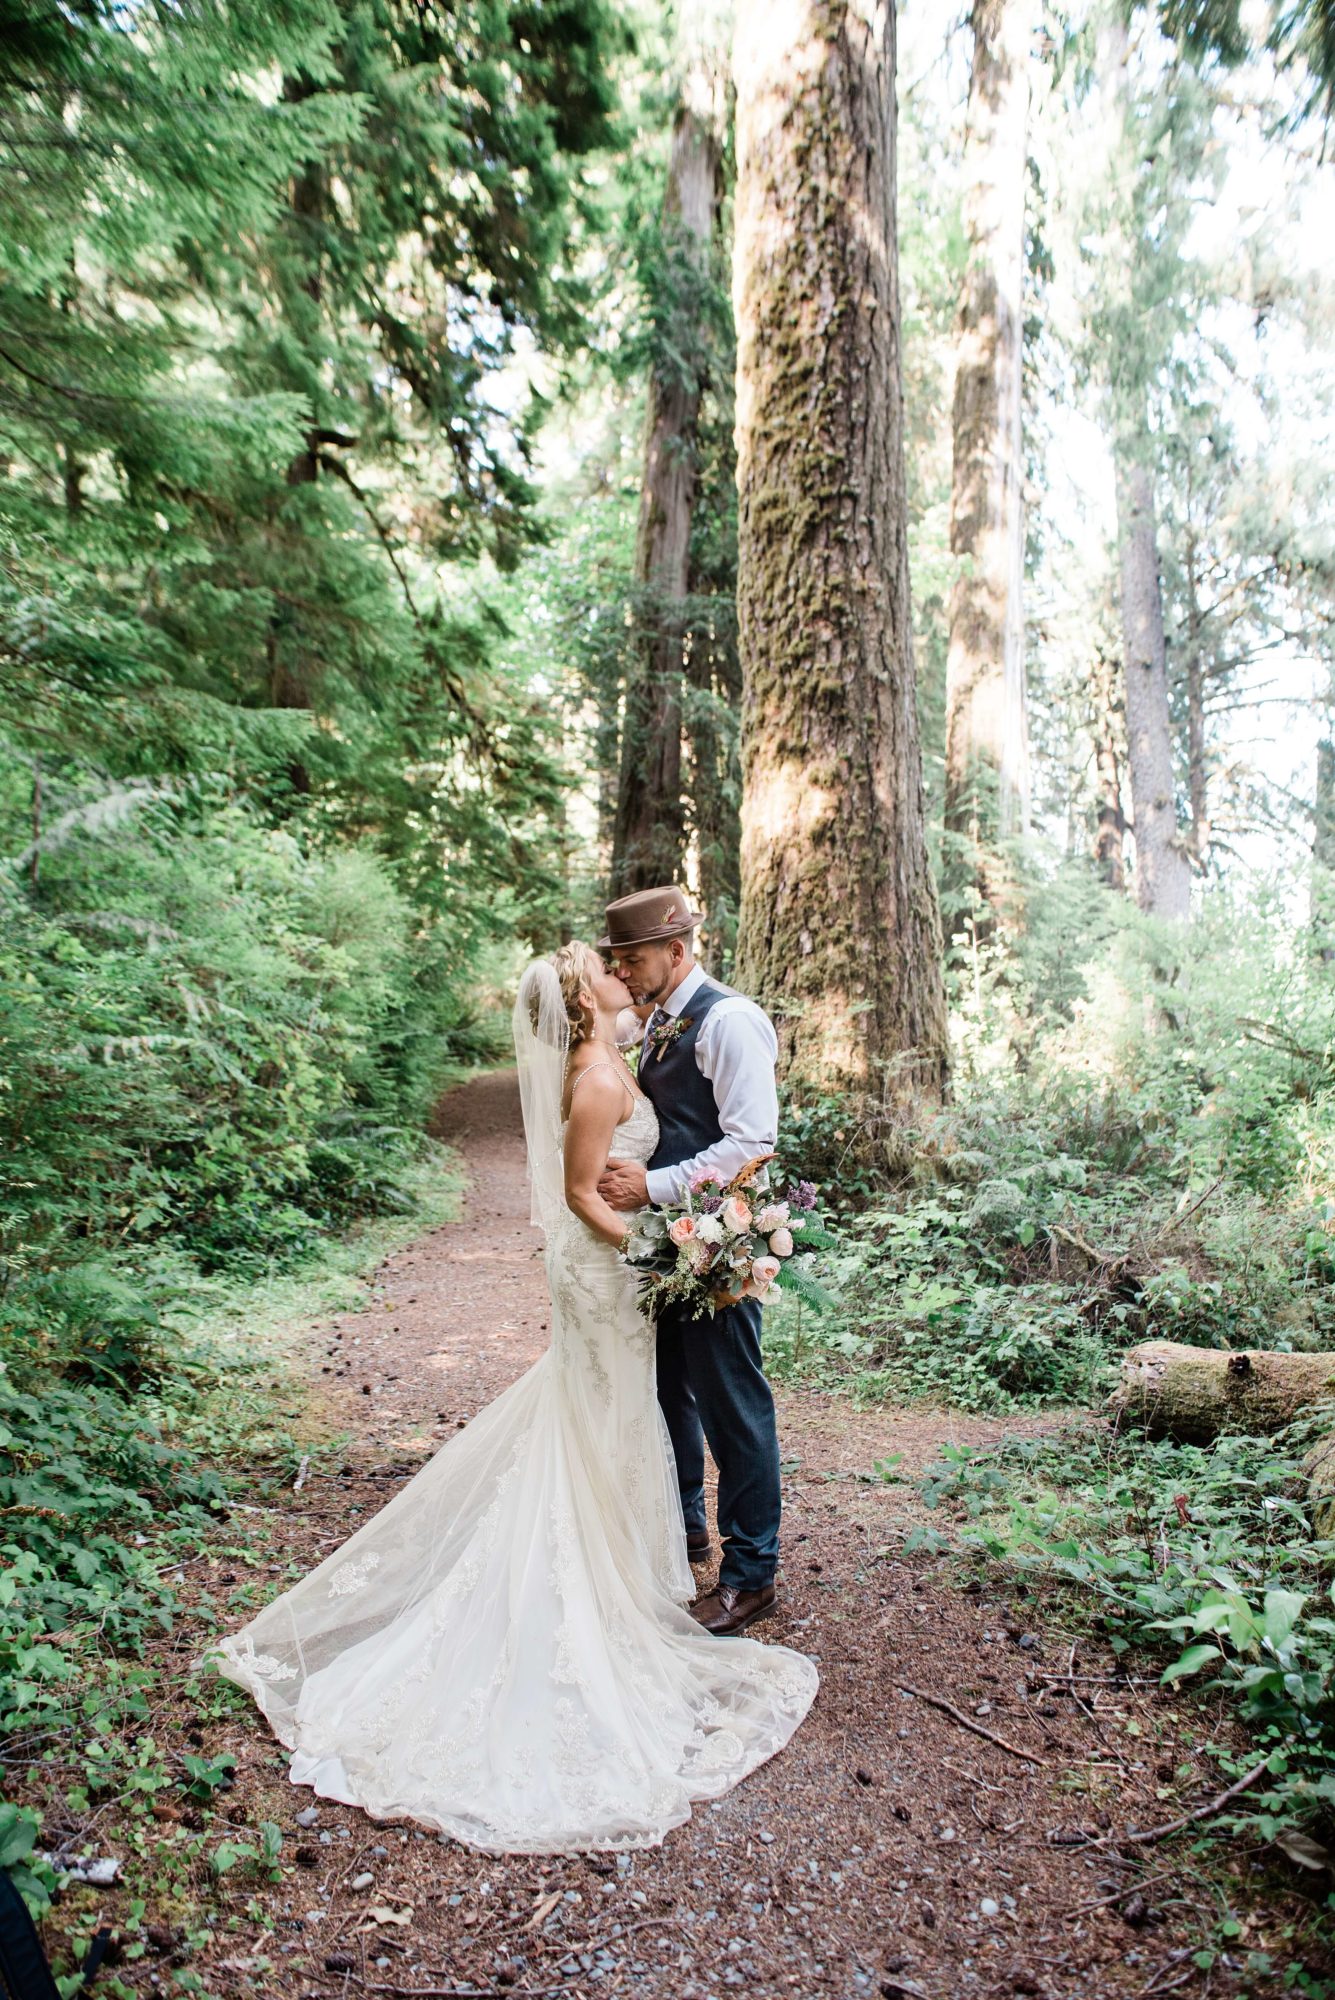 Bride and Groom at Fern Acres Forks Forest Wedding Venue